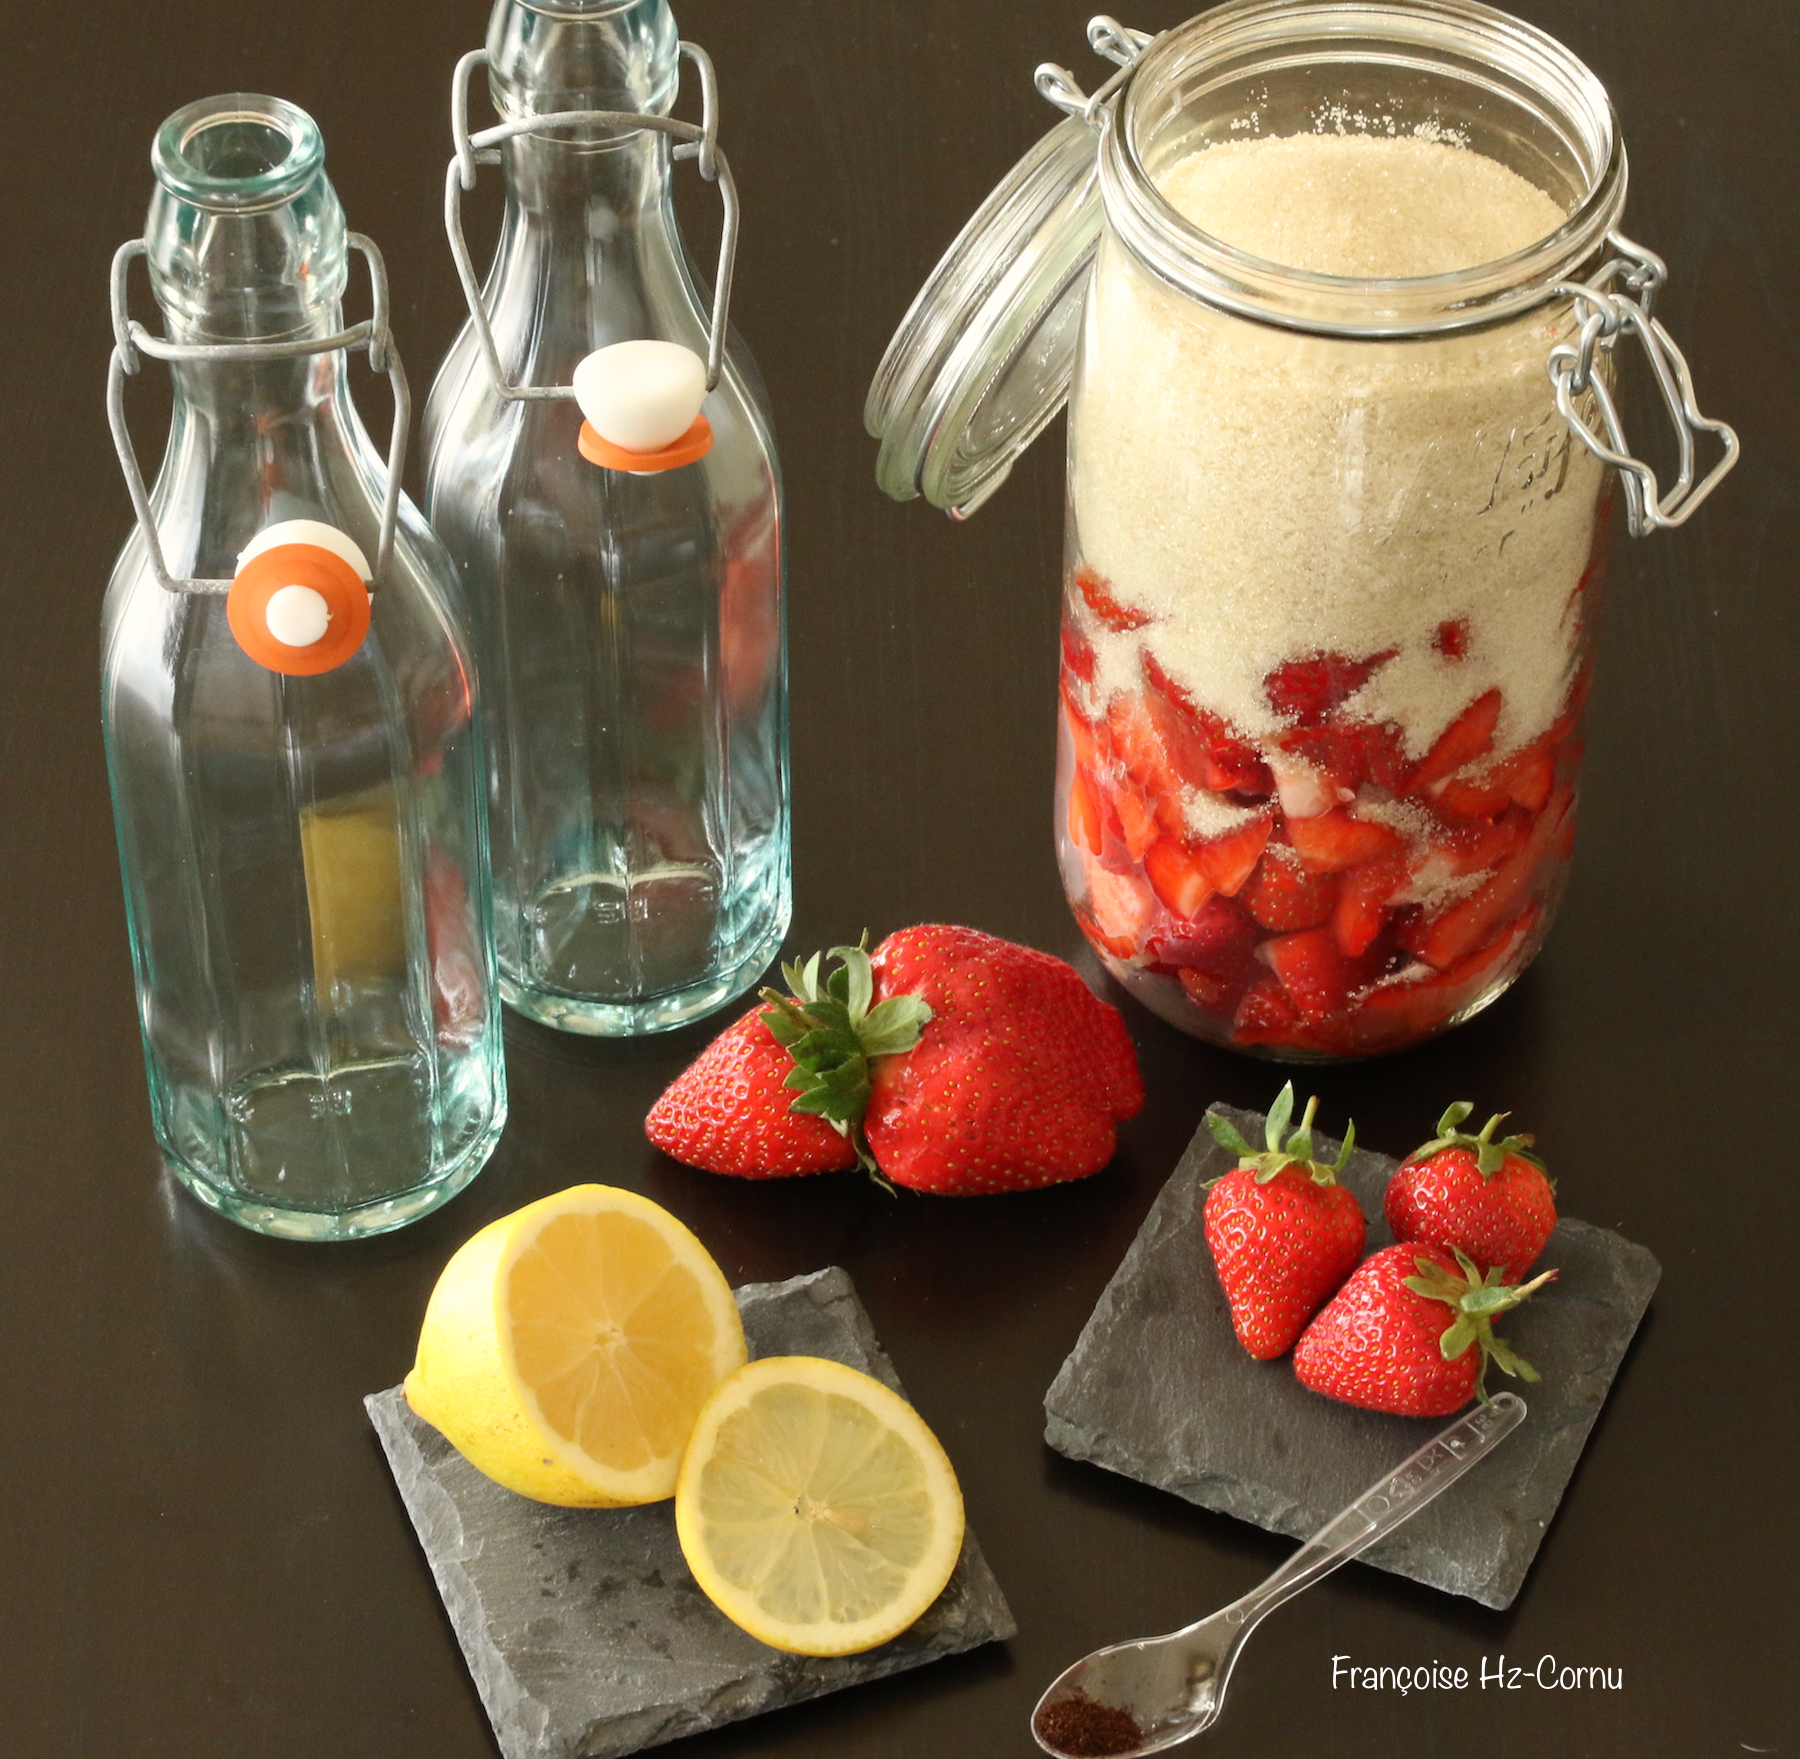 Ingrédients pour 1 litre de sirop de fraises